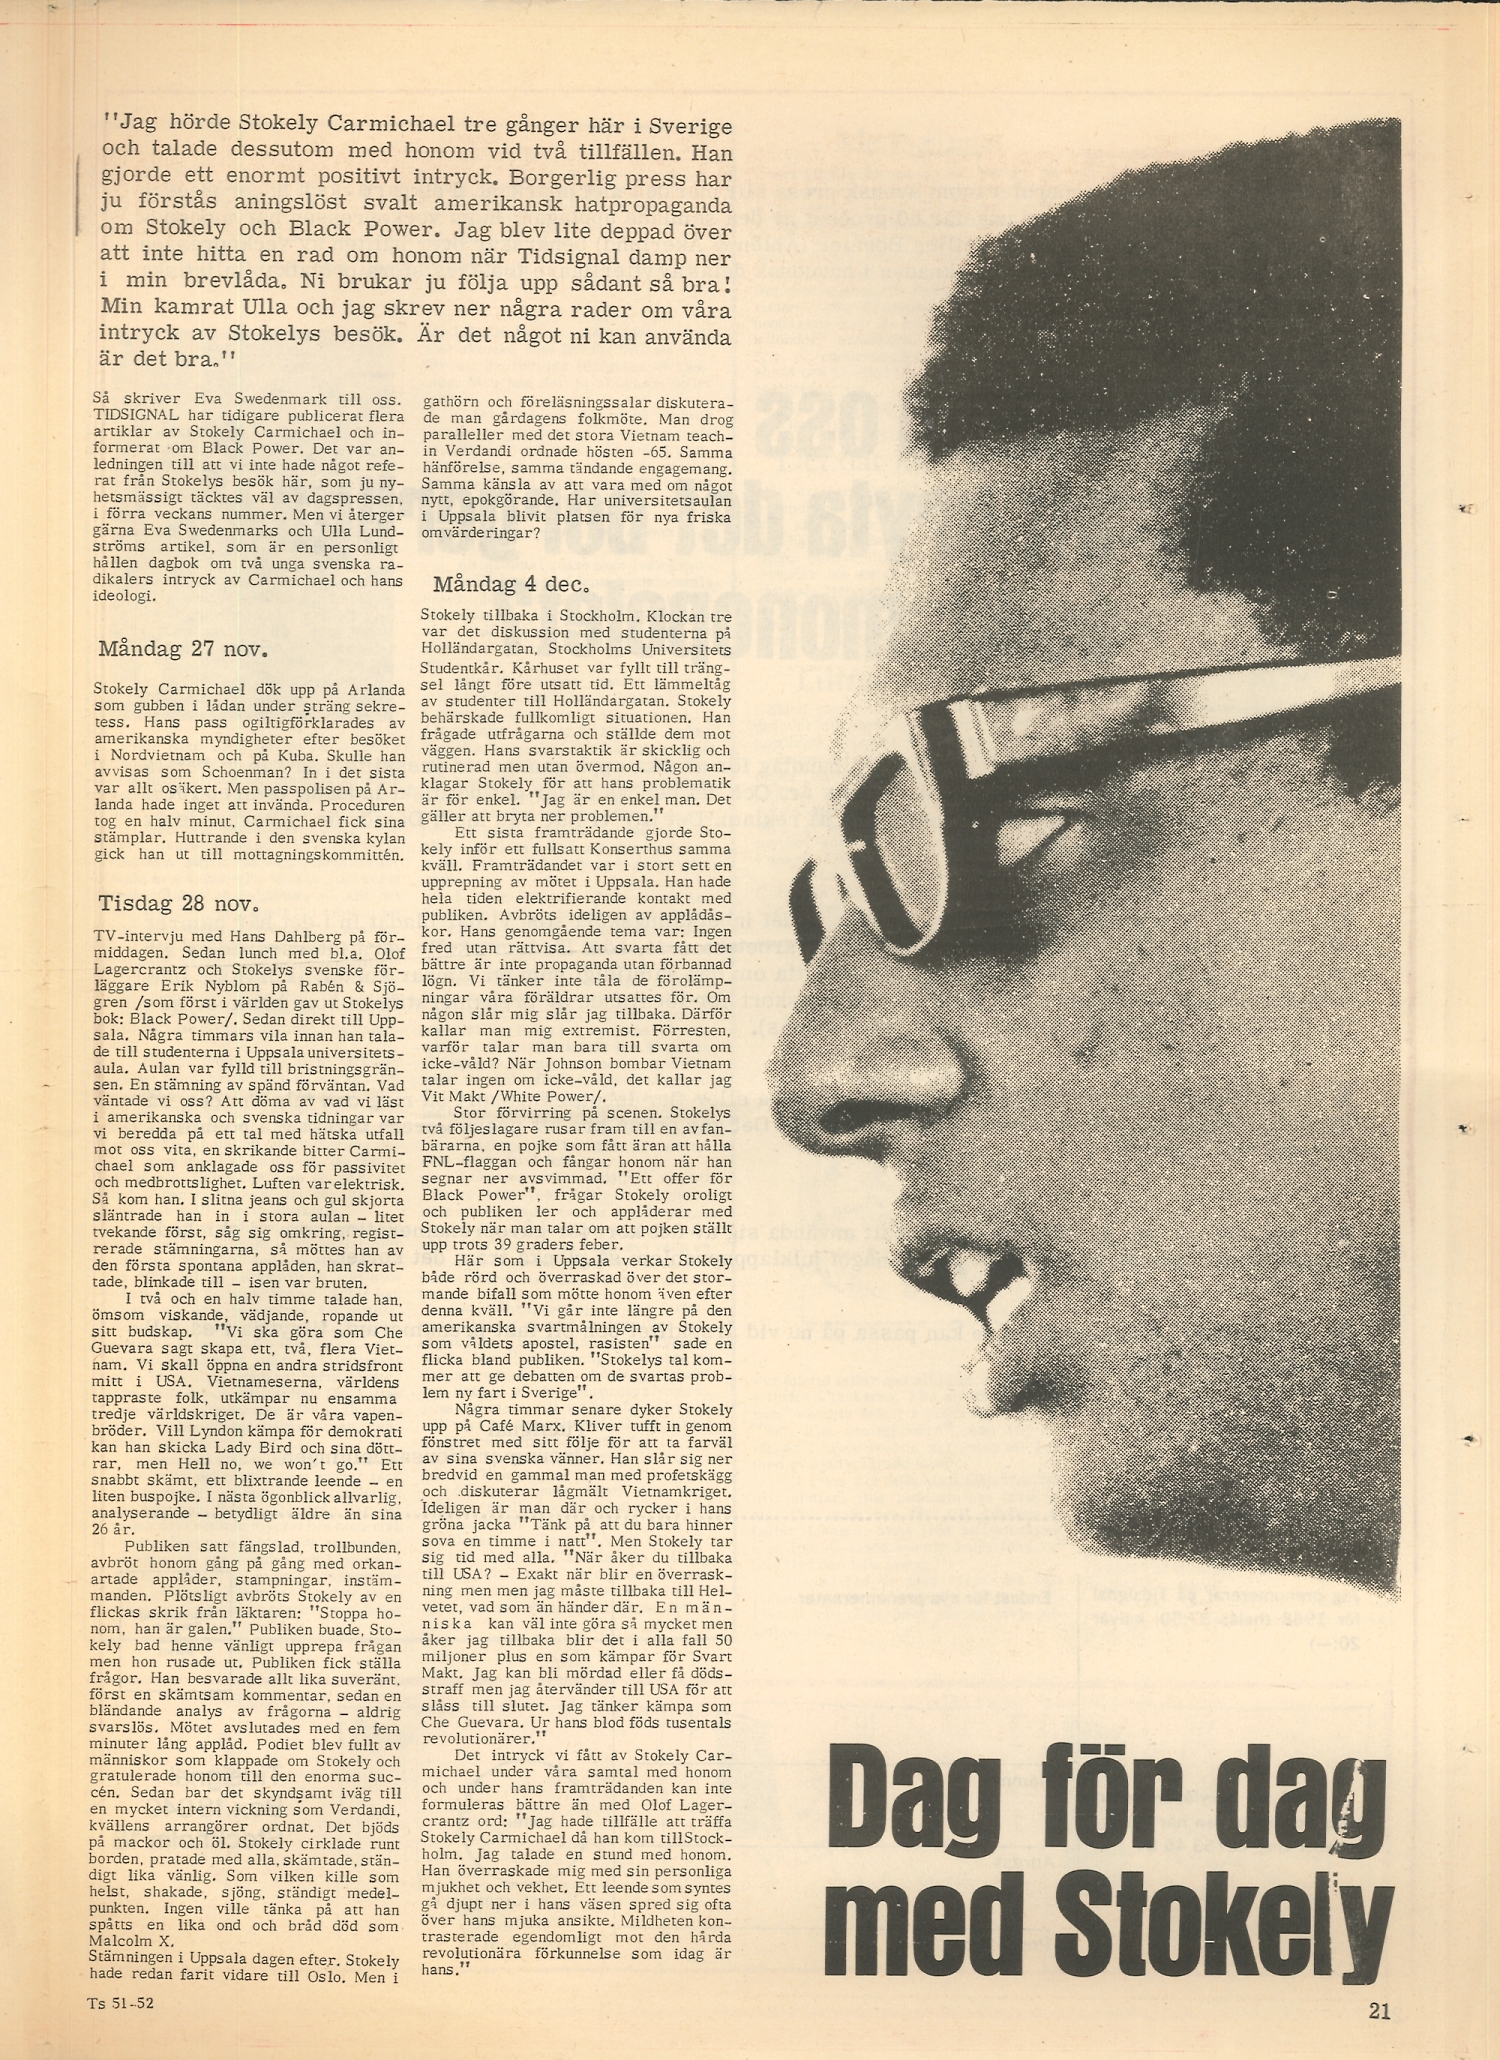 Artikel: Swedenmark, "Dag för dag med Stokely", i Tidsignal, 1967:51/52, s. 21